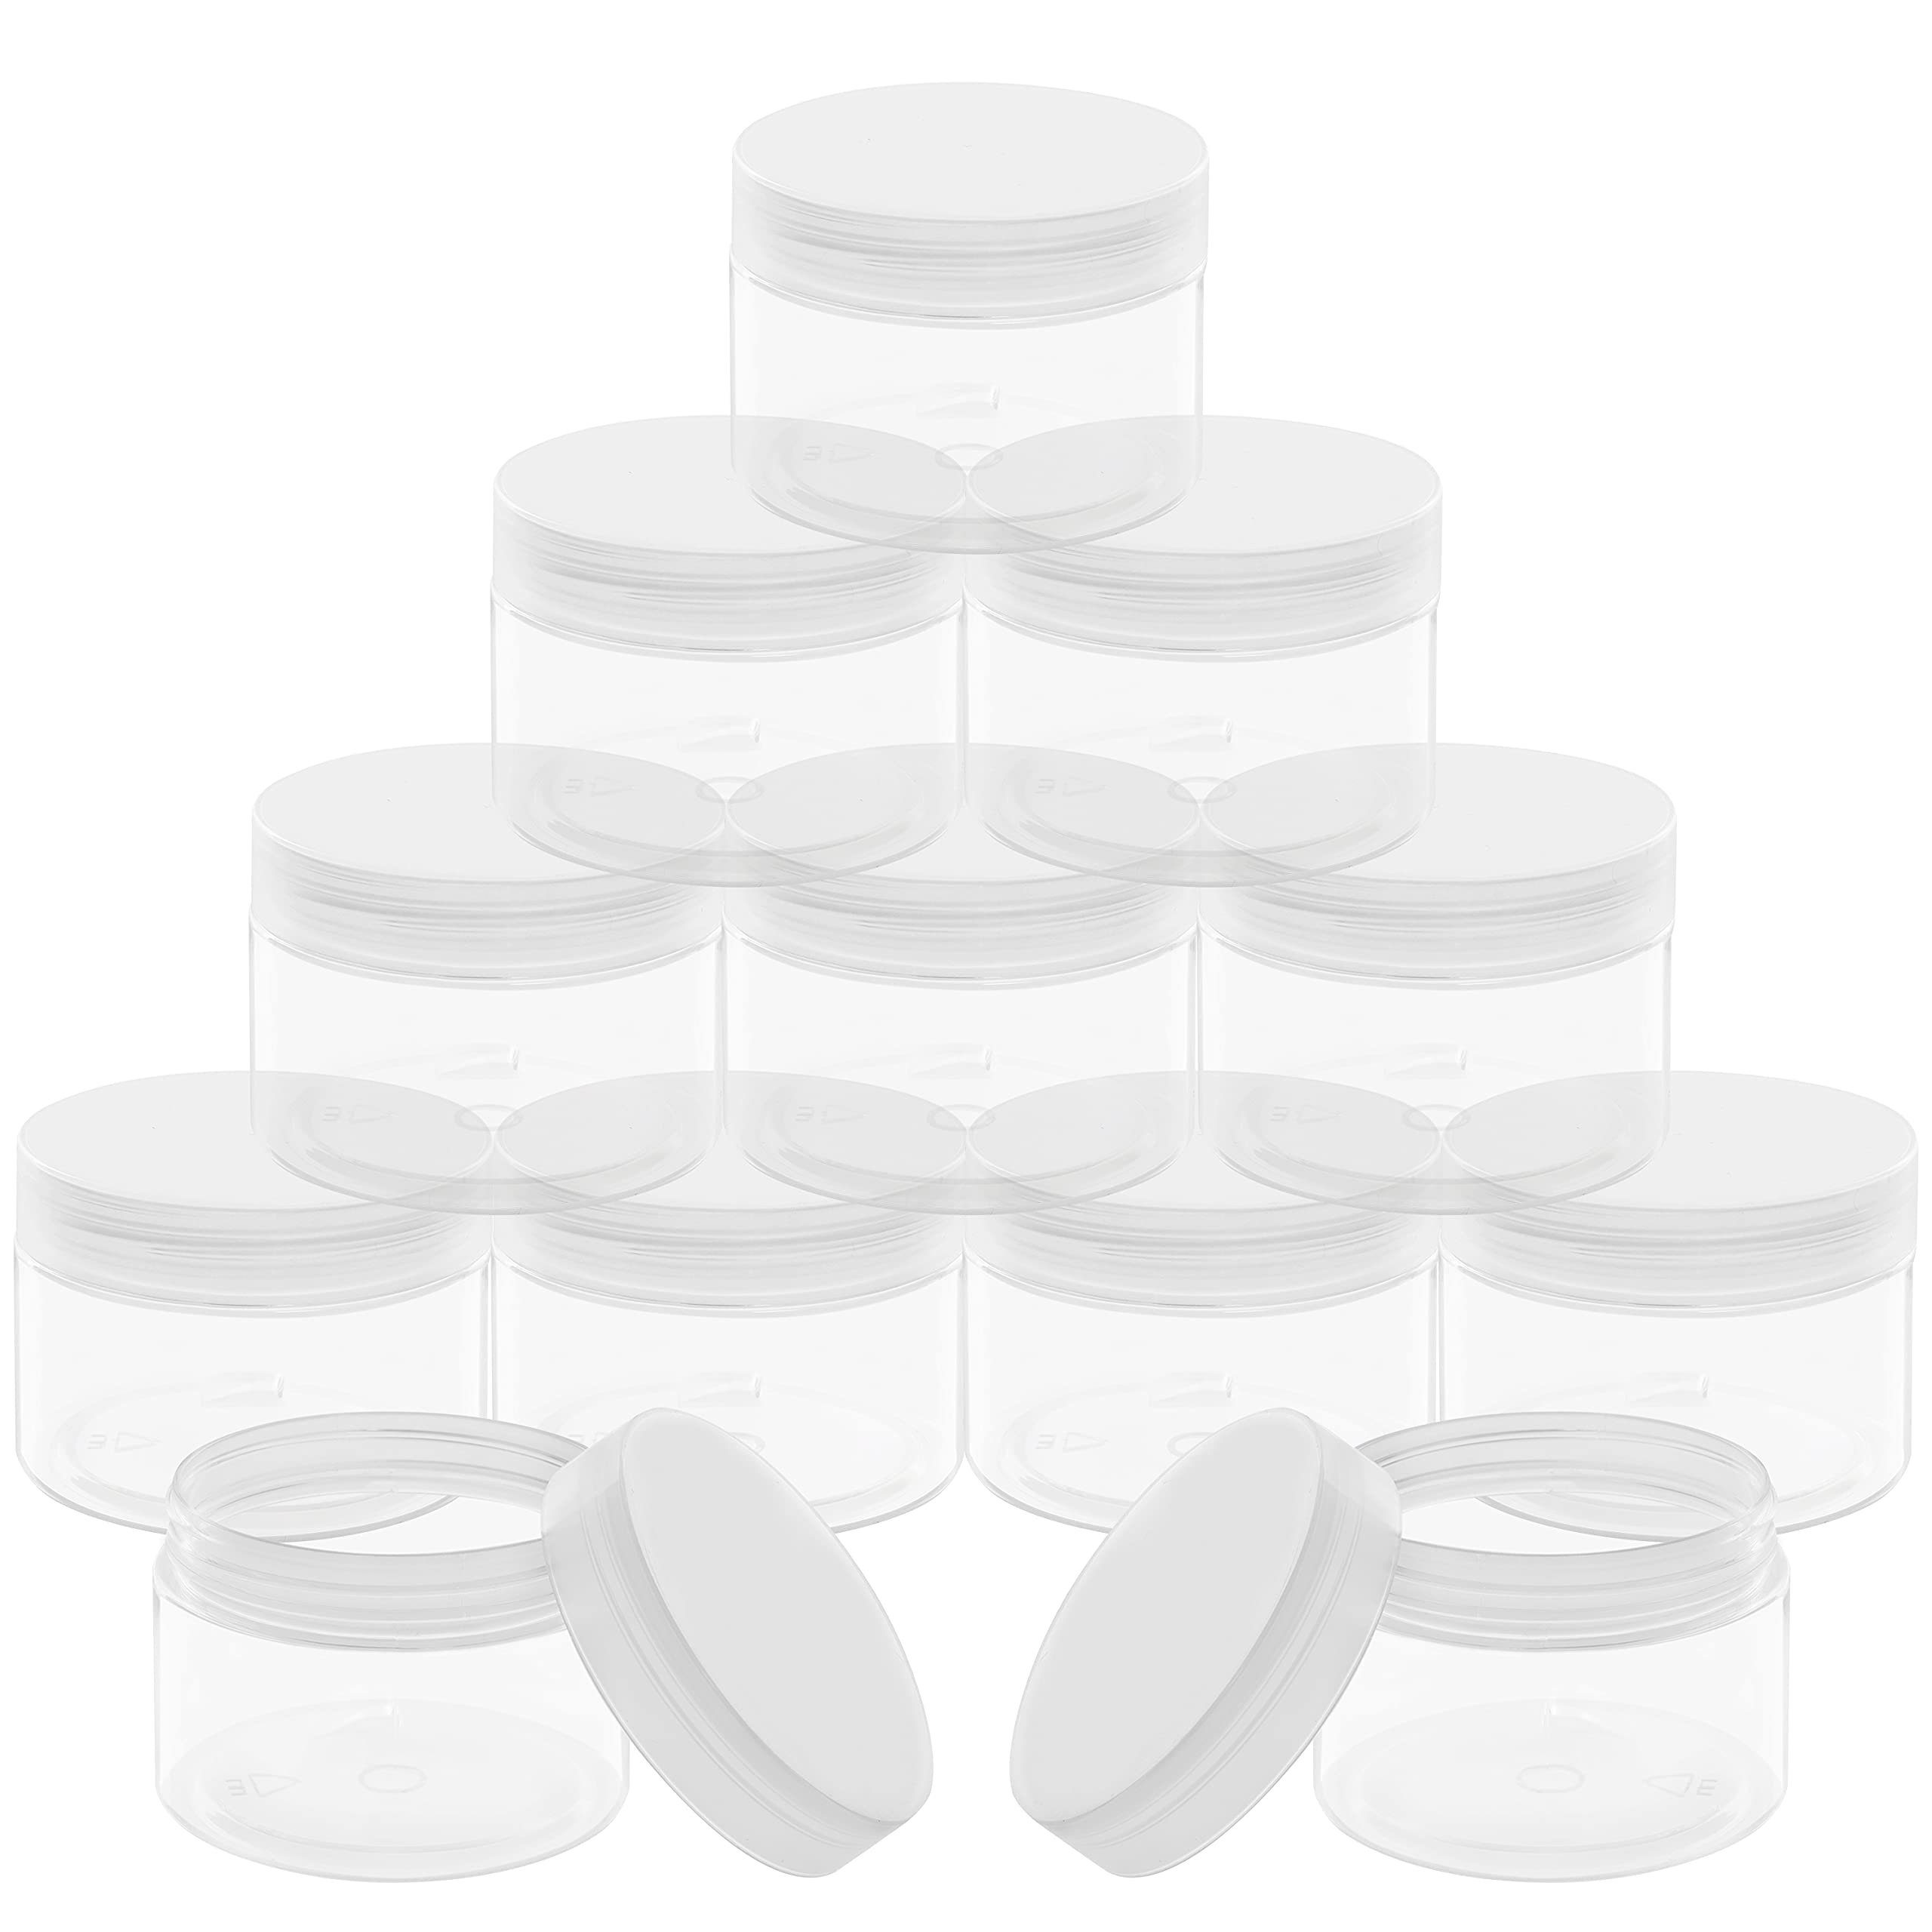 Belle Vous Flachmann Transparente Kosmetikbehälter (12 Stk) - 150ml - Auslaufsicher, Transparente Kosmetikbehälter (12 Stk) - 150ml Döschen - Auslaufsicher